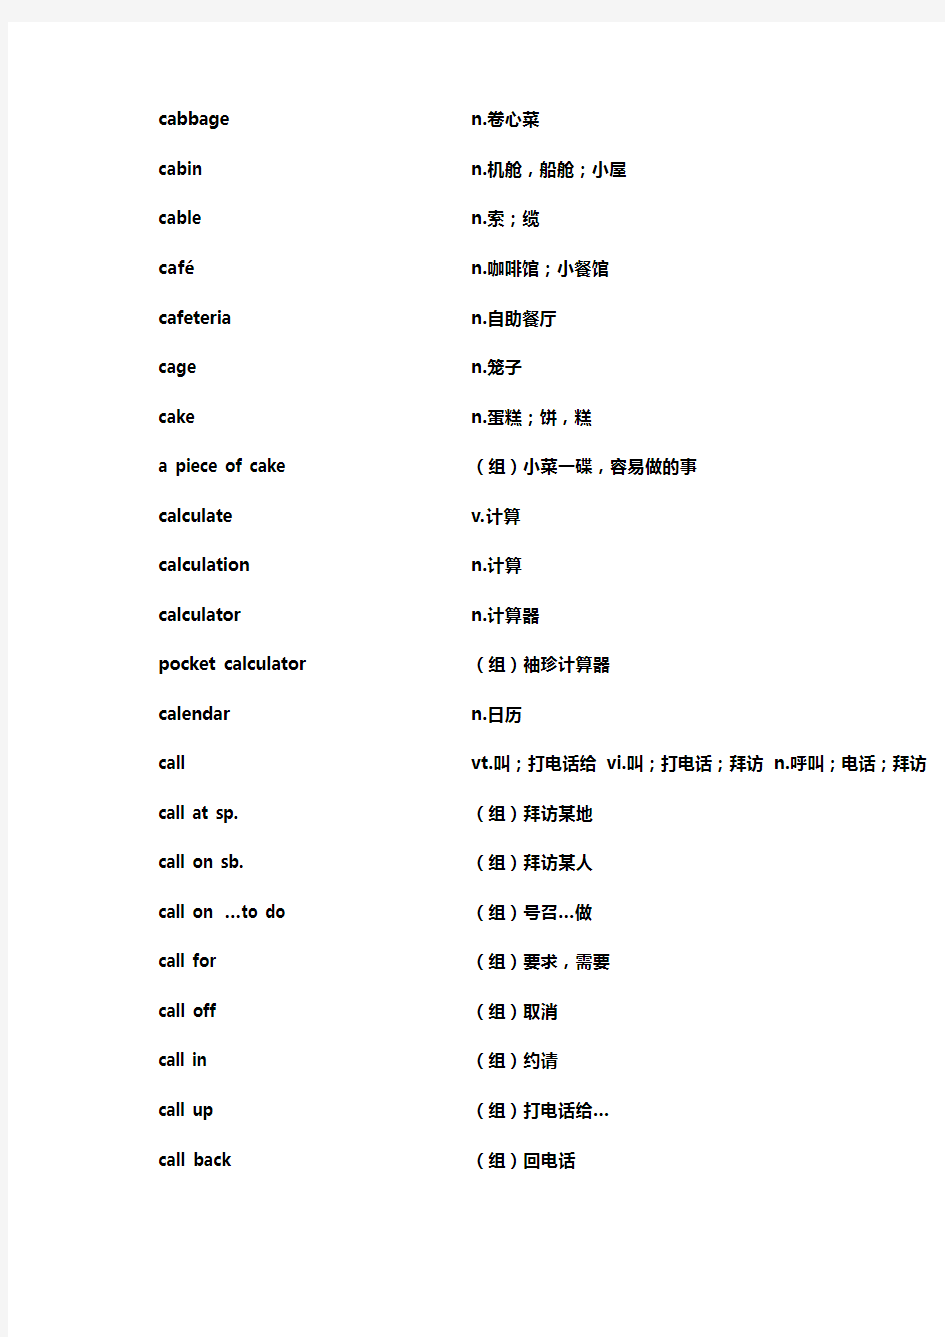 上海高考词汇手册(及时雨)C..